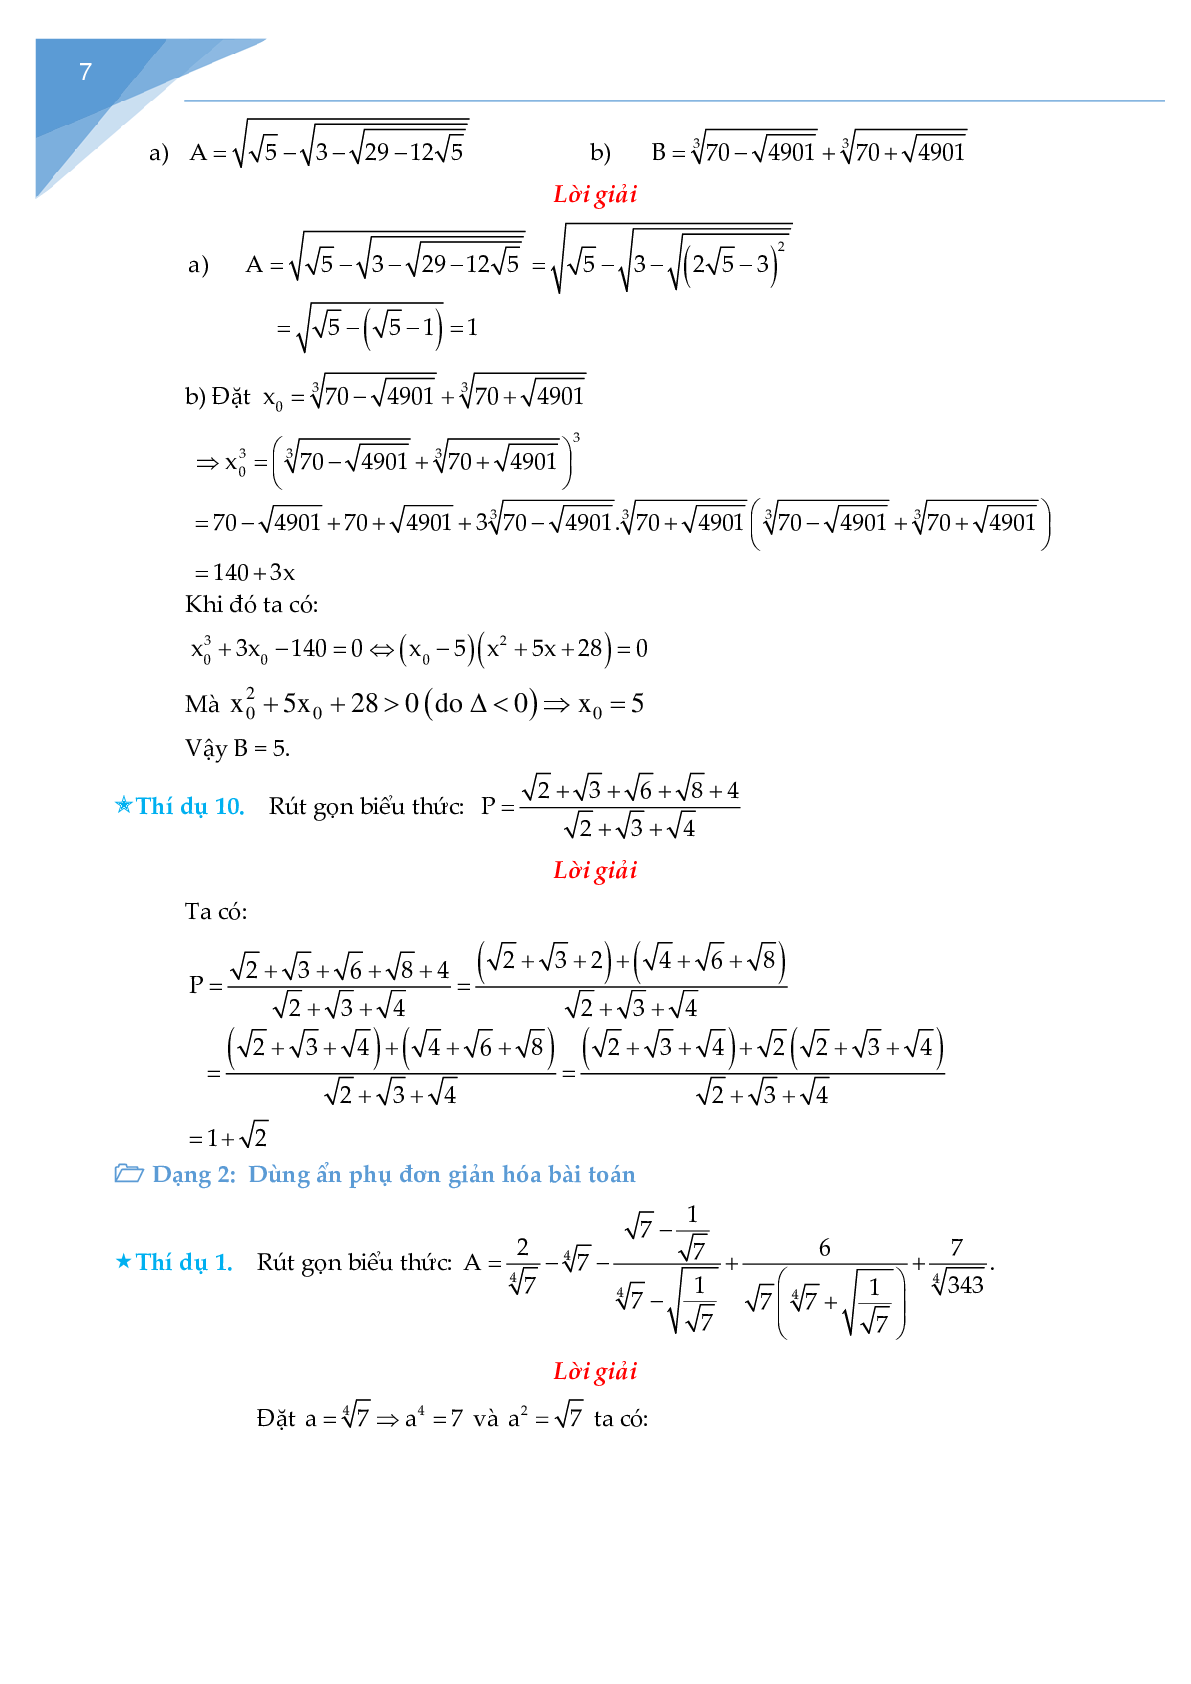 Rút gọn biểu thức chứa căn và bài toán liên quan (trang 7)